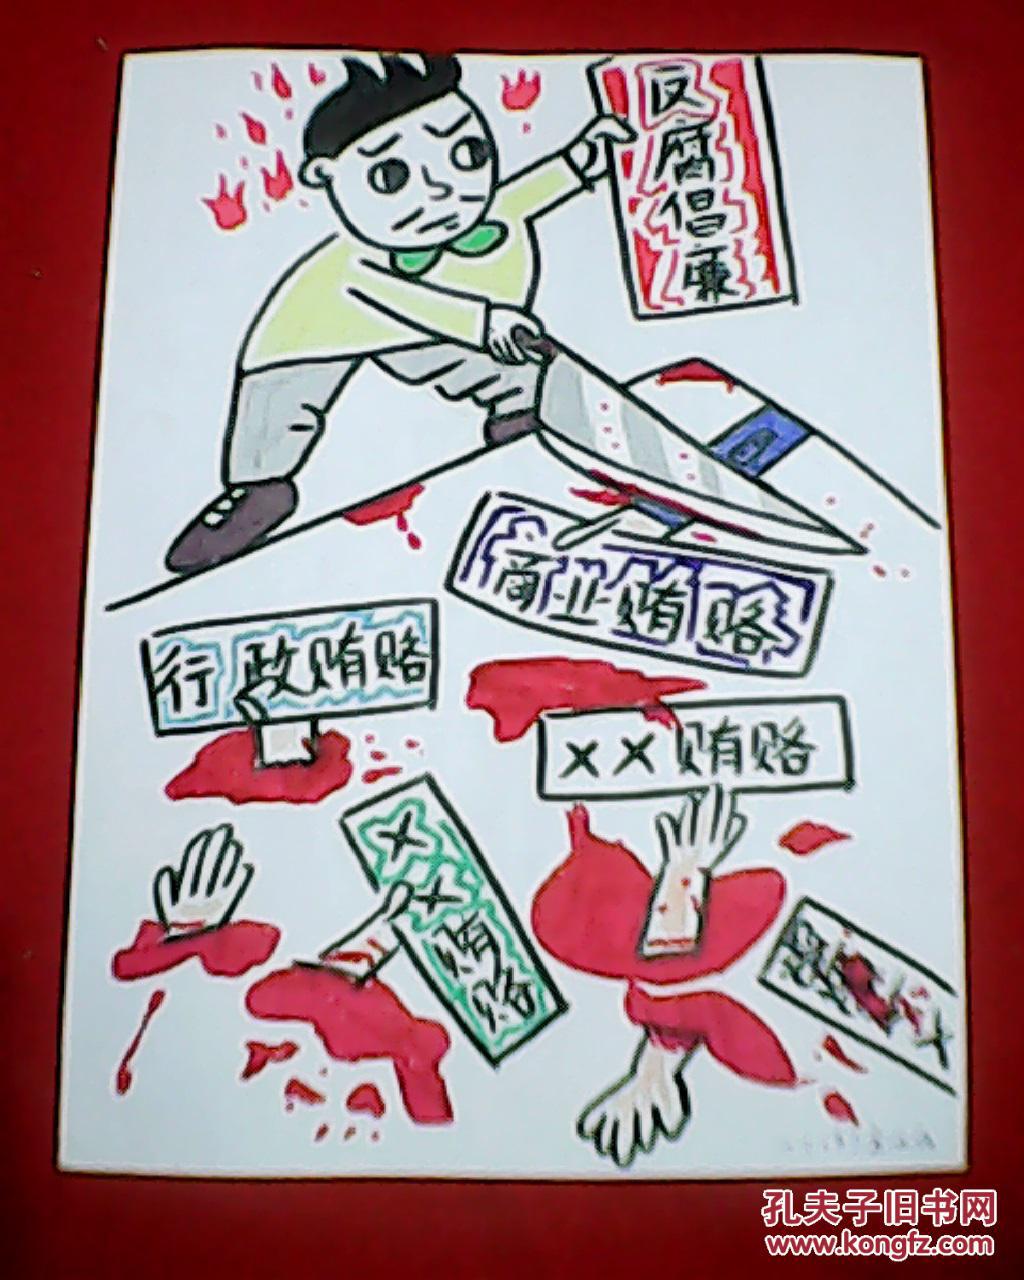 王天石反腐倡廉漫画：斩断贿赂犯罪的渠道（此为原画，未装裱；其尺寸大小为：宽21厘米，高29.5厘米）